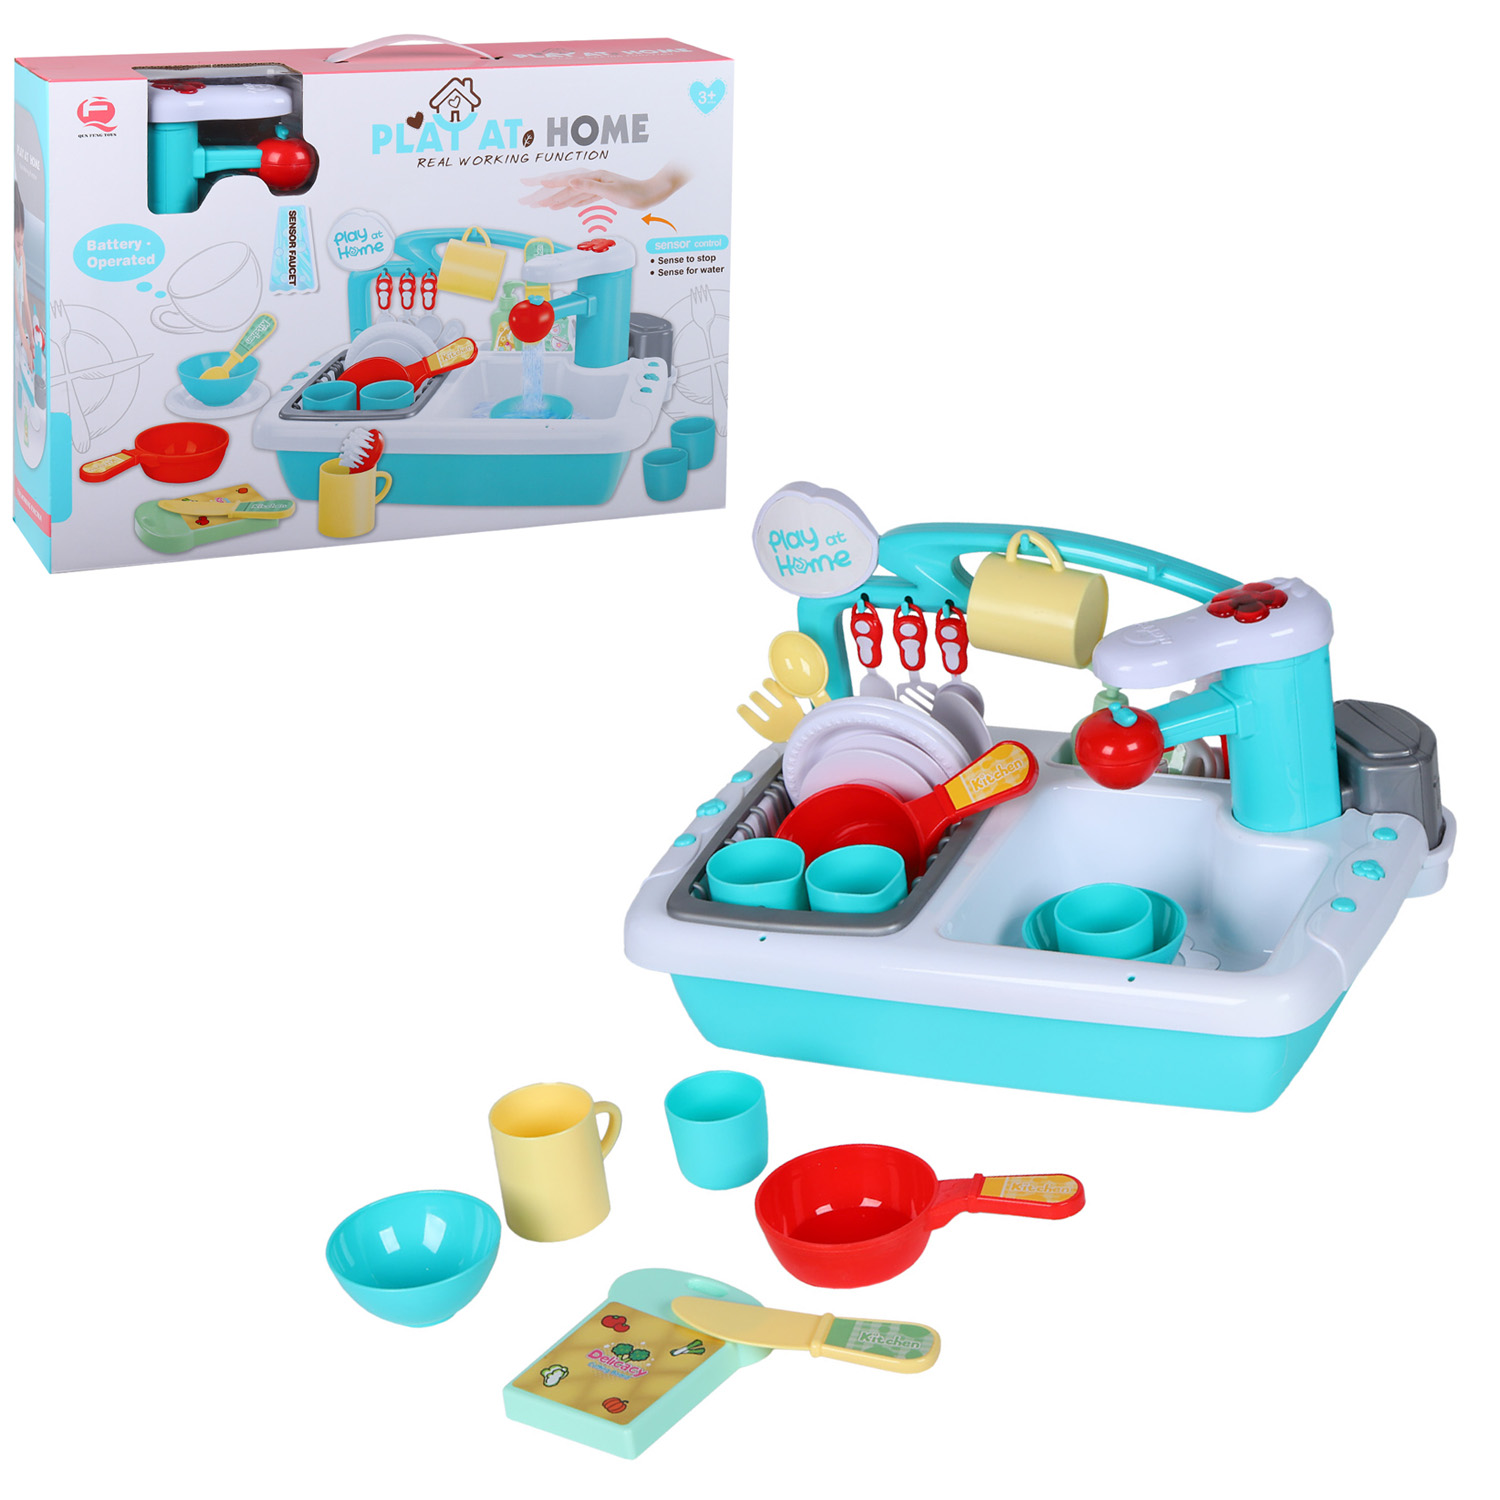 фото Детская кухня qun feng toys раковина с водой, посуда, столовые приборы, голубой jb0209149 amore bello